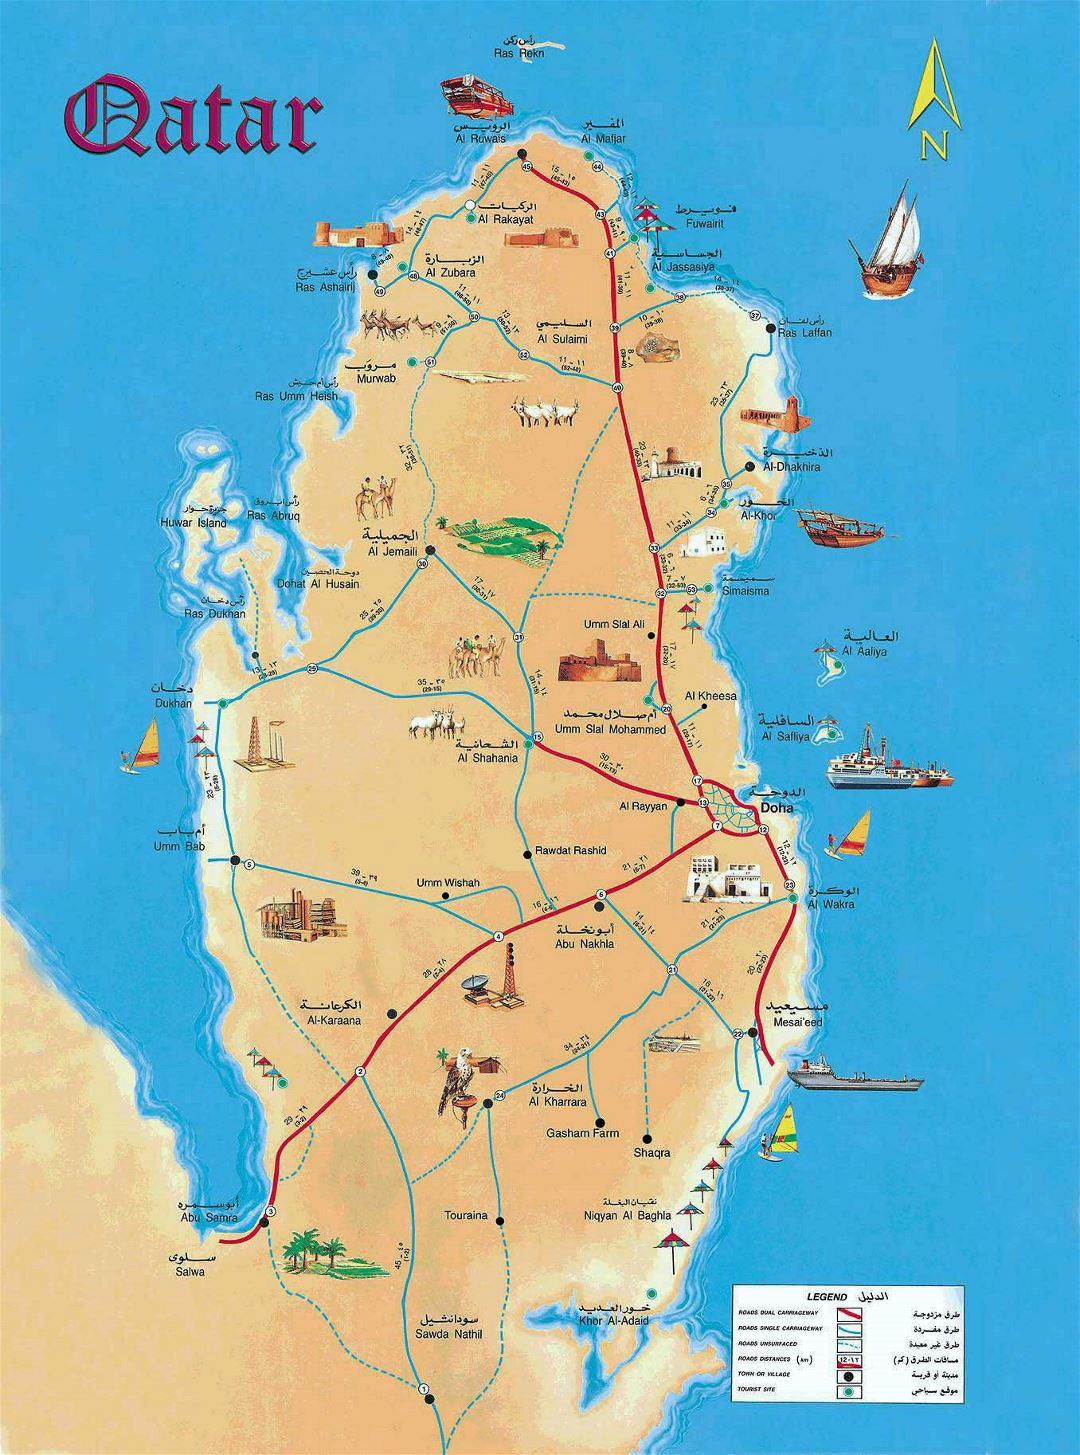 Grande detallado mapa turístico de Catar